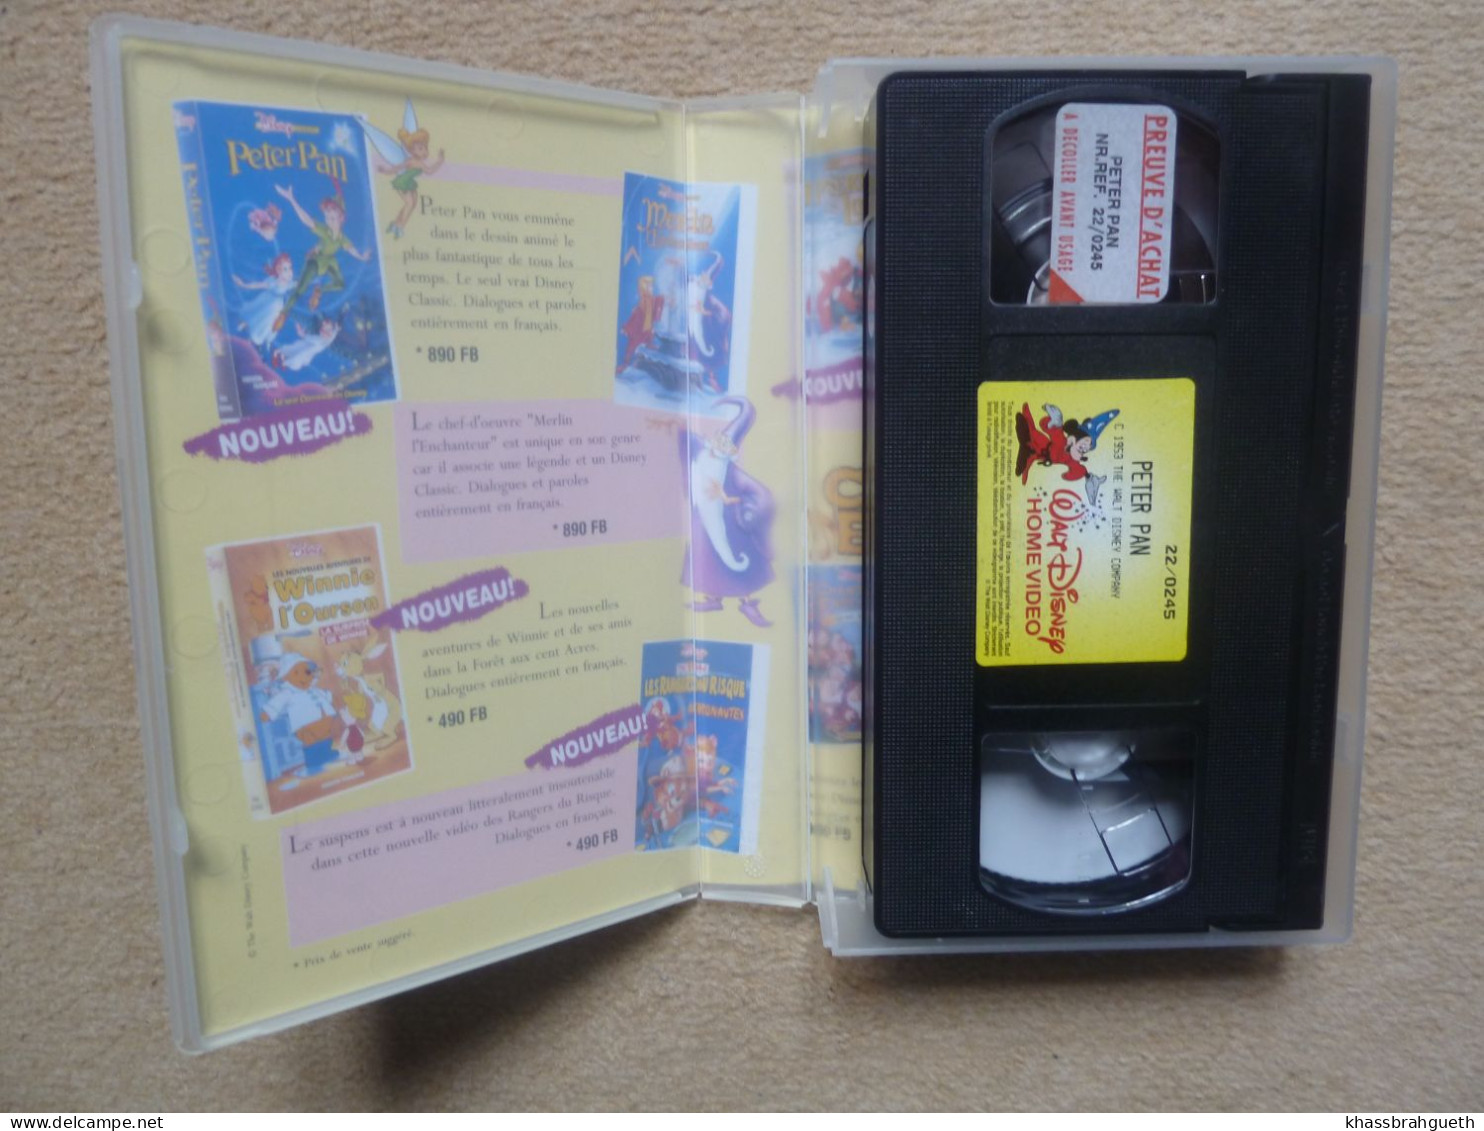 PETER PAN - DISNEY CLASSIQUES (CASSETTE VHS) (1993) - Dessins Animés